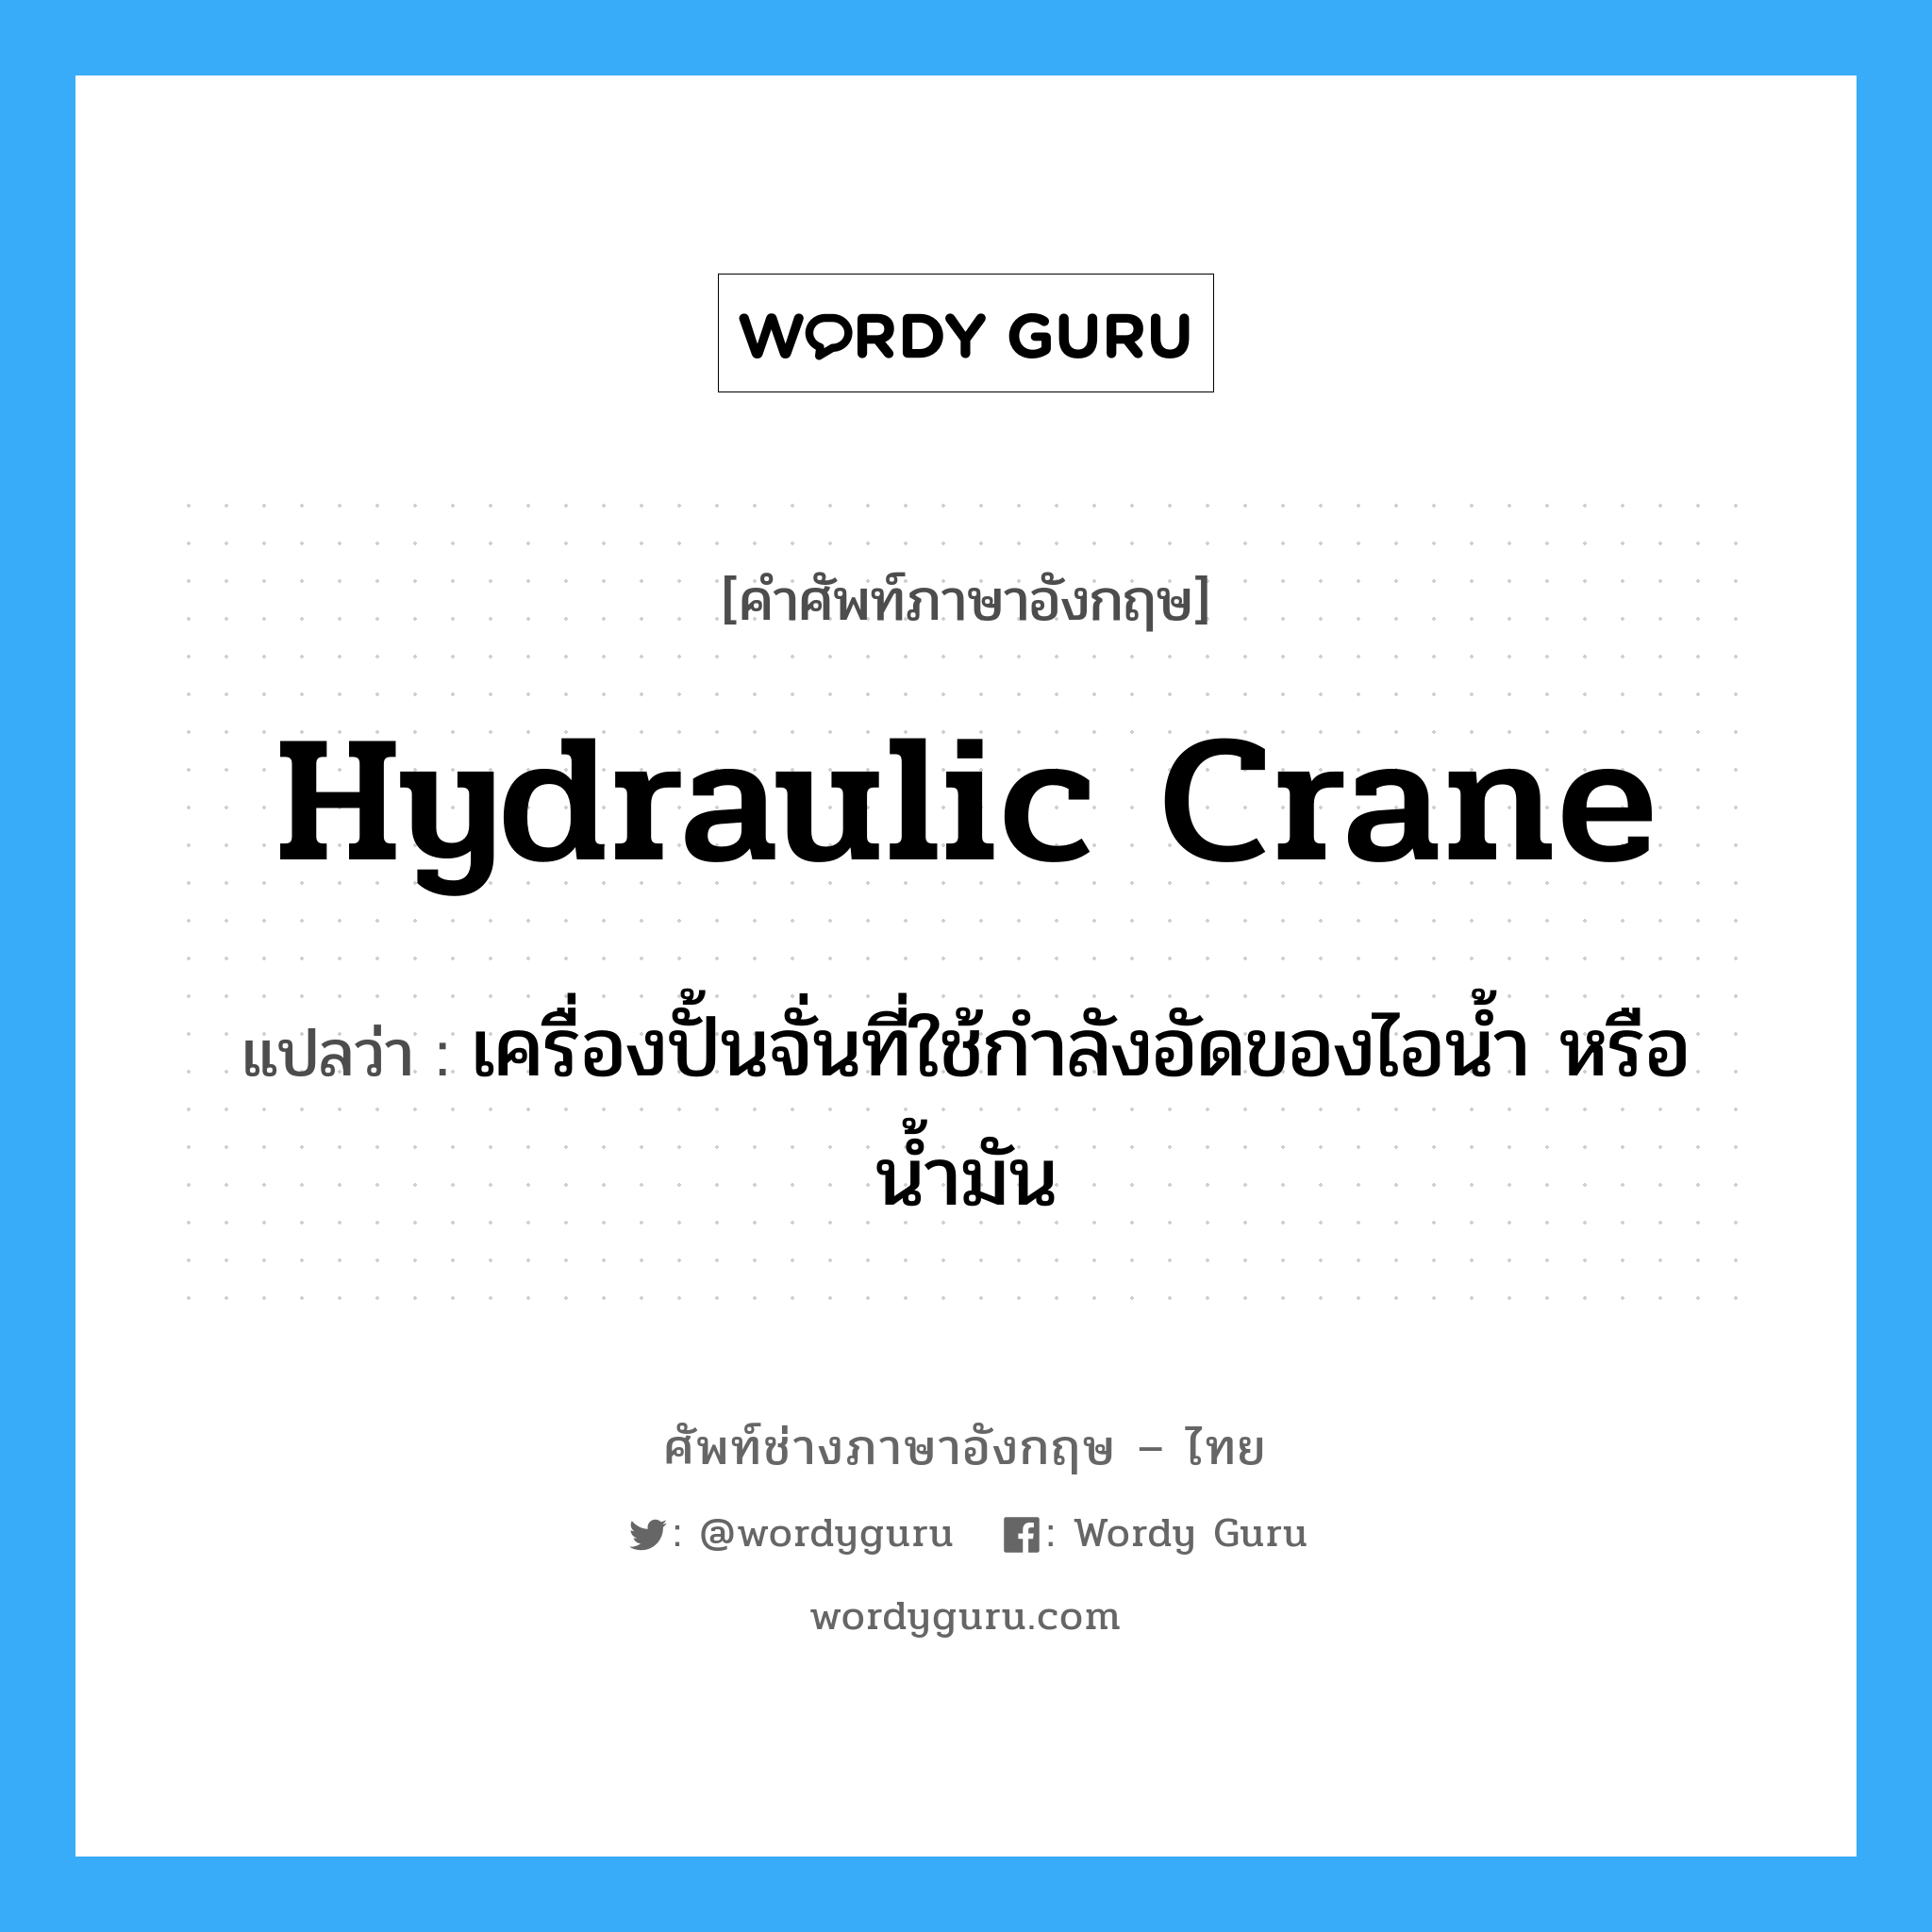 hydraulic crane แปลว่า?, คำศัพท์ช่างภาษาอังกฤษ - ไทย hydraulic crane คำศัพท์ภาษาอังกฤษ hydraulic crane แปลว่า เครื่องปั้นจั่นที่ใช้กำลังอัดของไอน้ำ หรือน้ำมัน